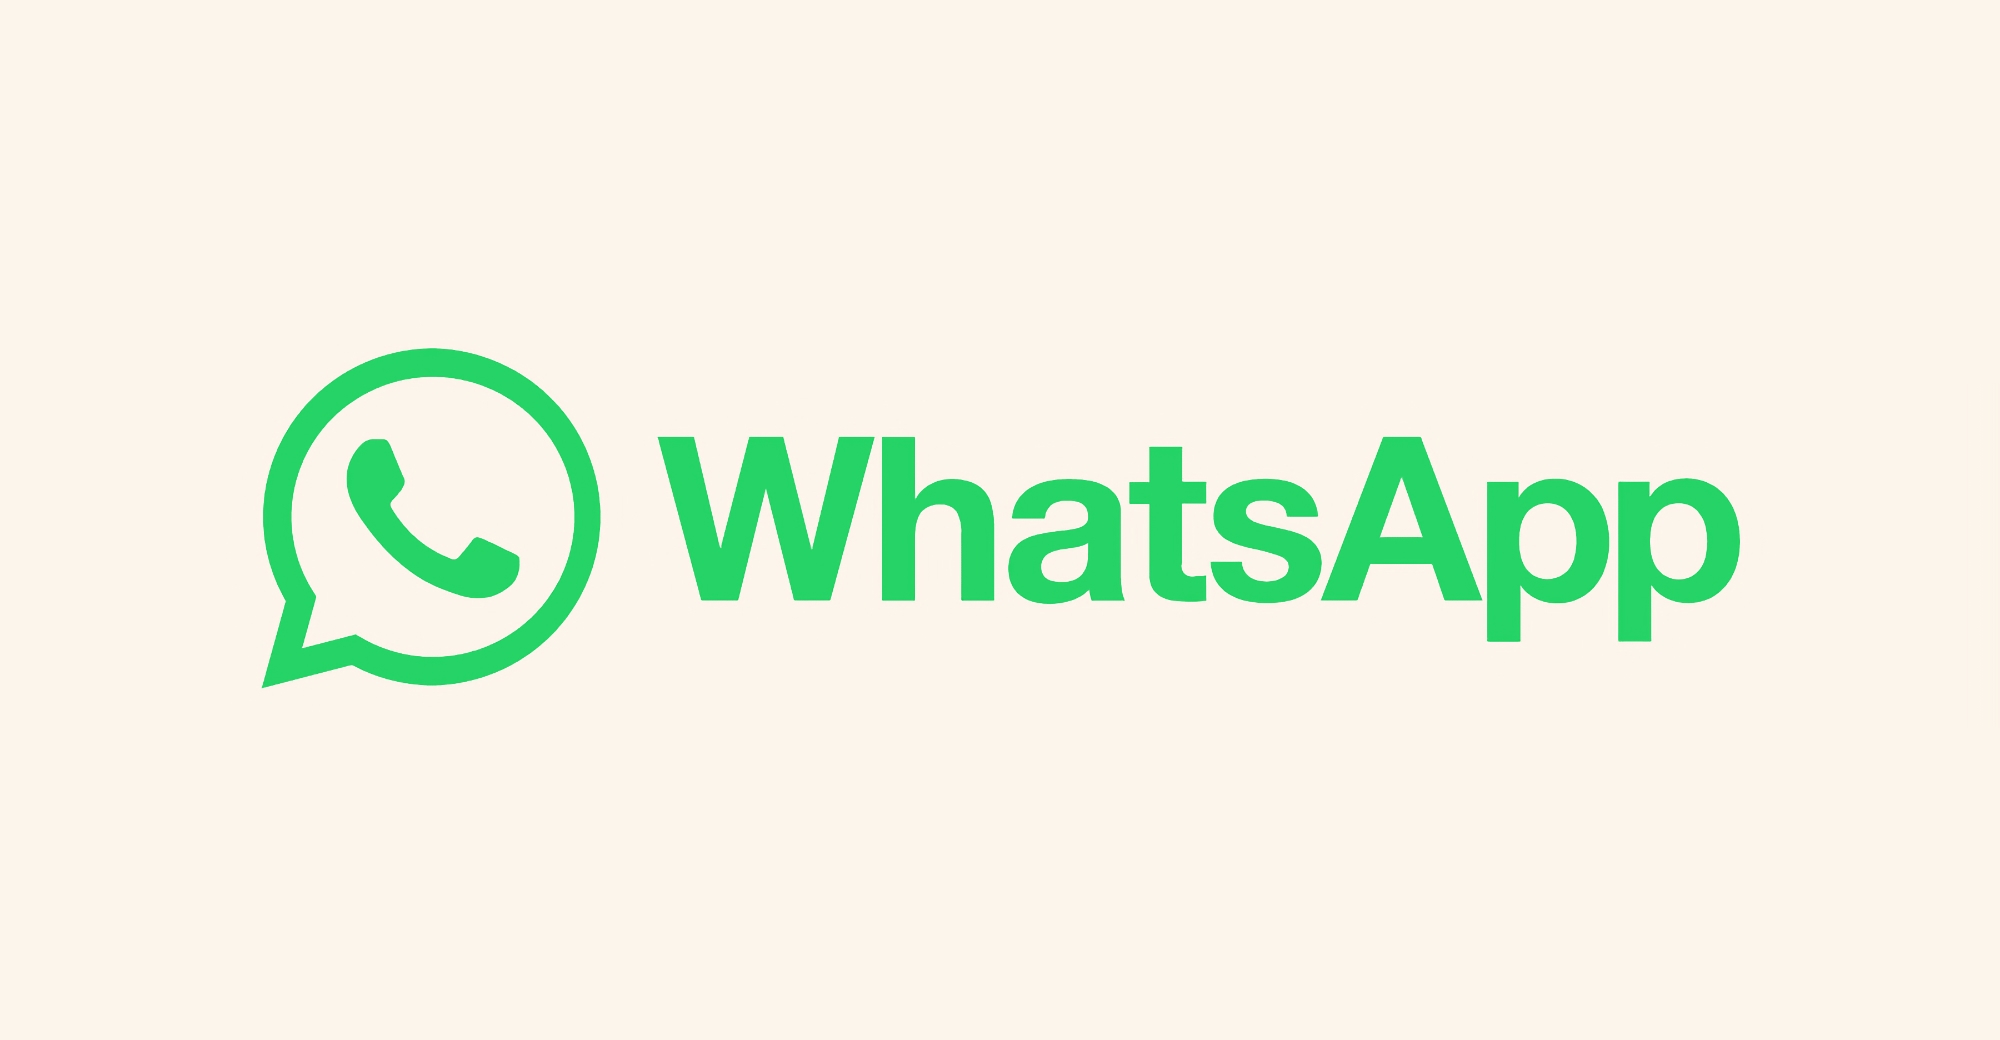 Le 1er janvier, WhatsApp ne fonctionnera plus sur les Galaxy S2, Galaxy S3 Mini, iPhone 5, iPhone 5C et 43 autres modèles.